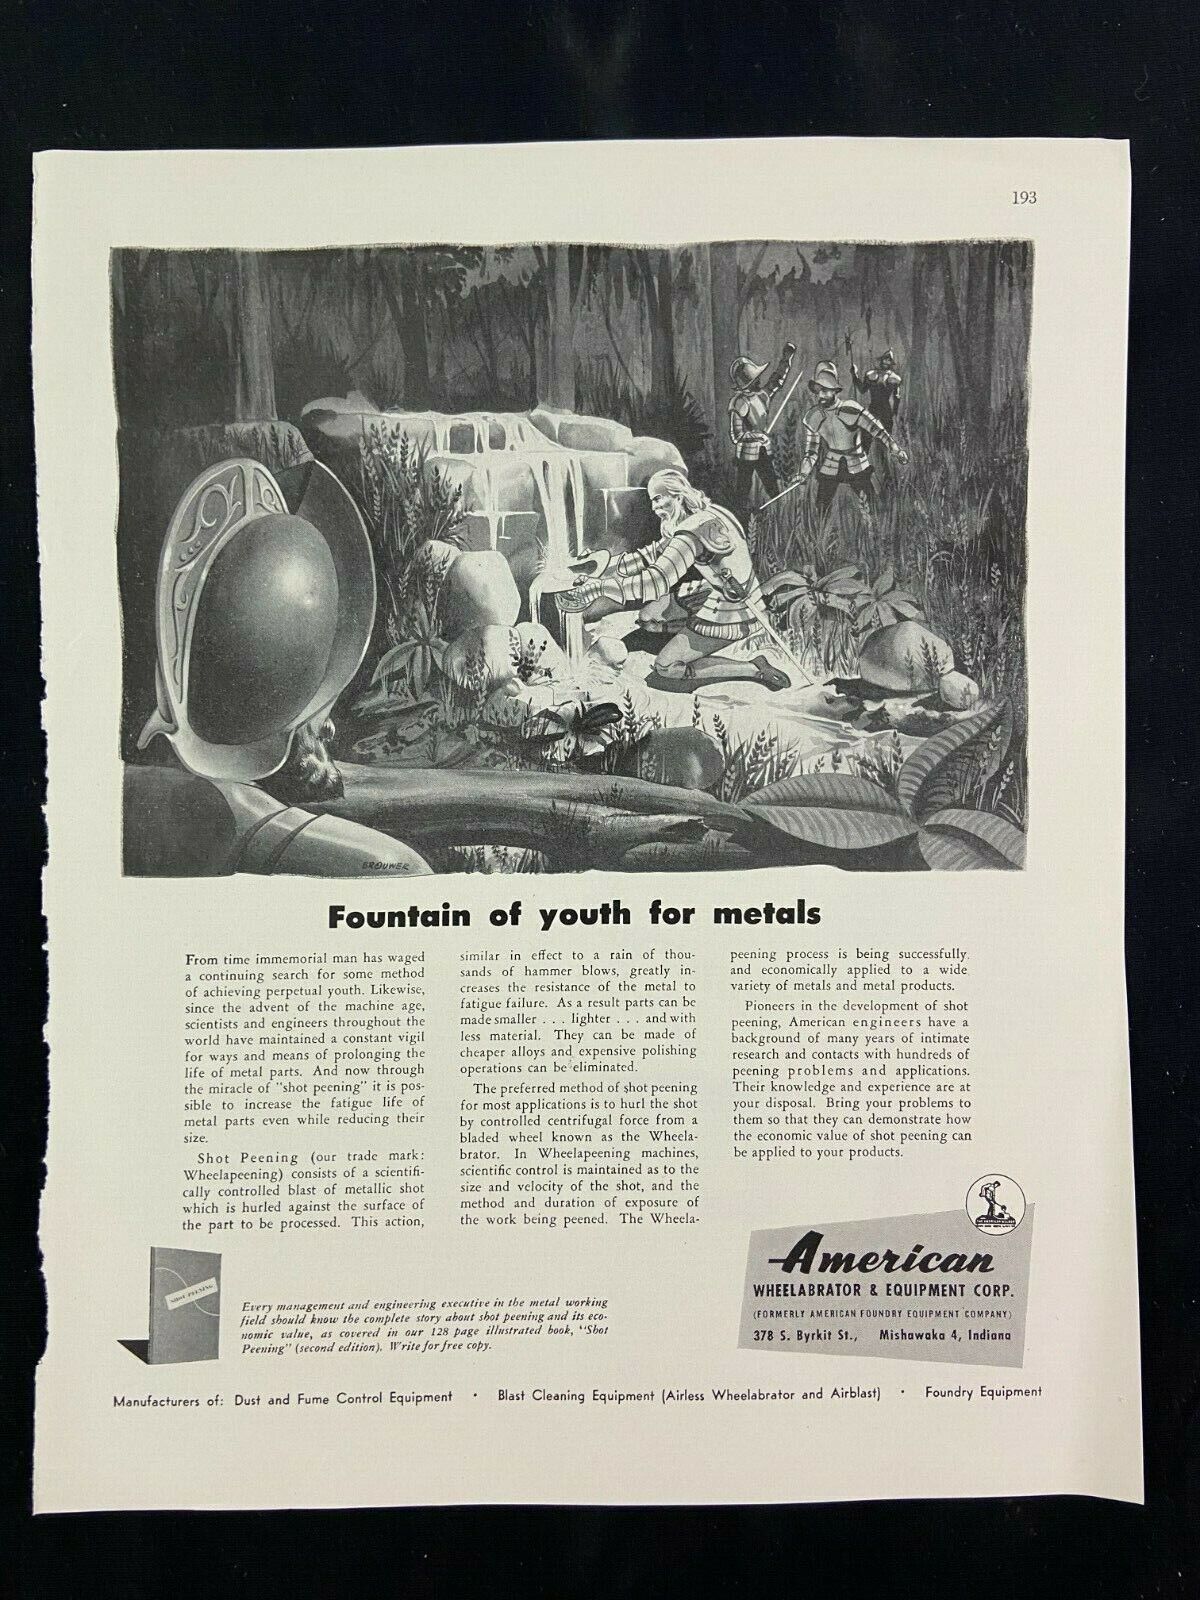 American Wheelabrator Magazine Ad 10.75 x 13.75 Emerson Radio Quincy Compressor